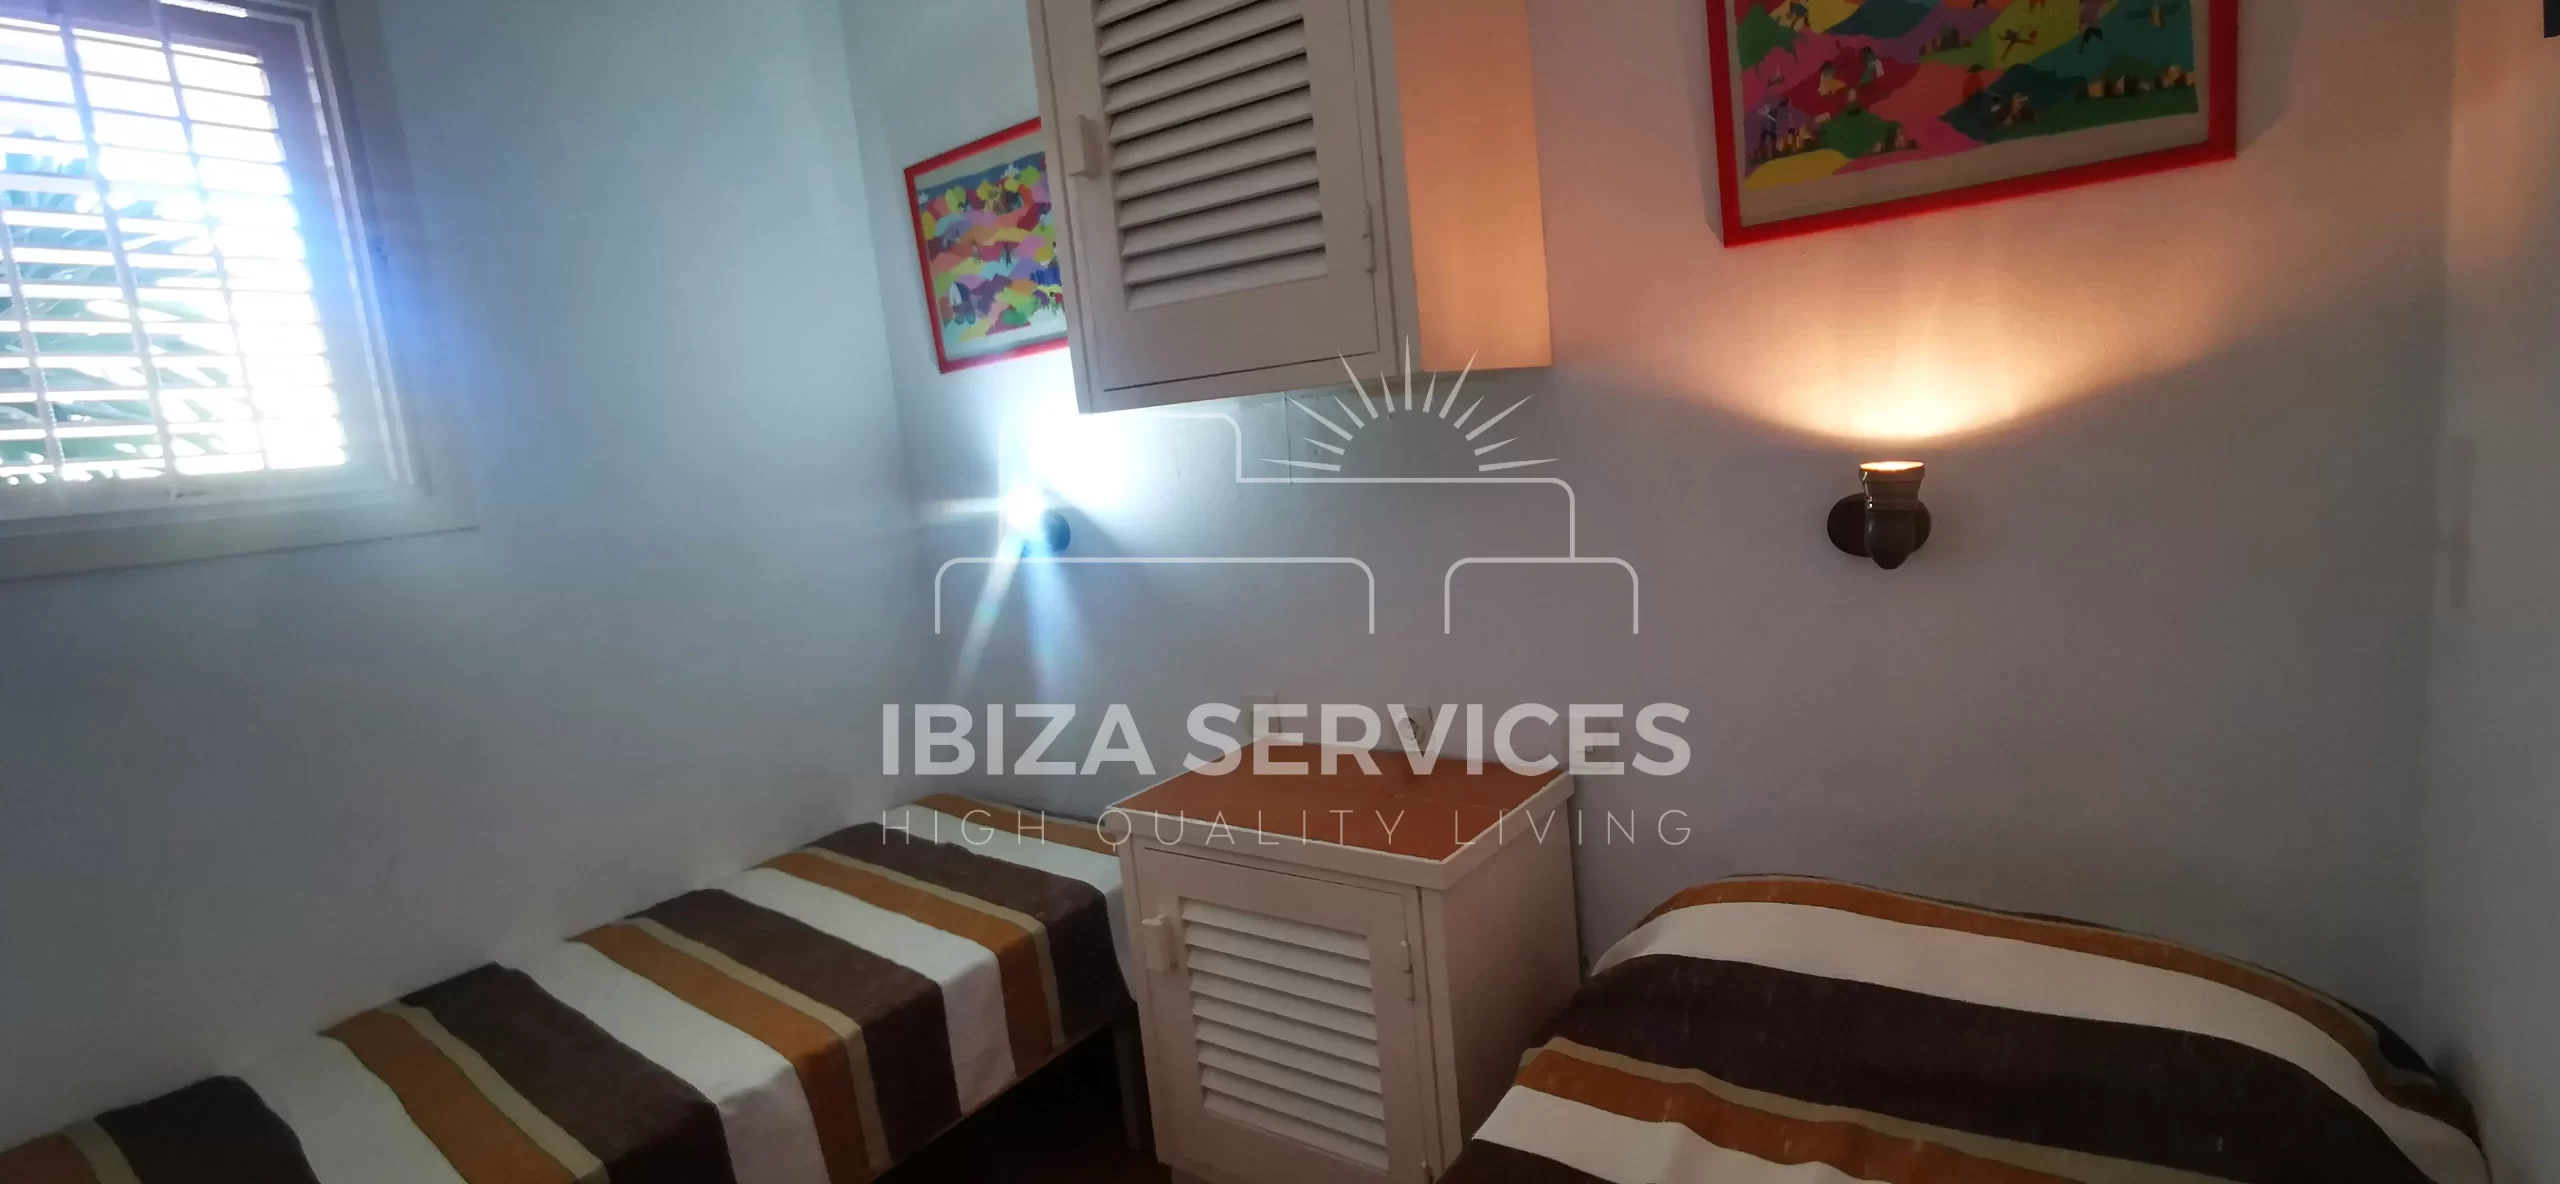 À Vendre : Appartement de Vacances en Bord de Mer à Cala Coral, Ibiza